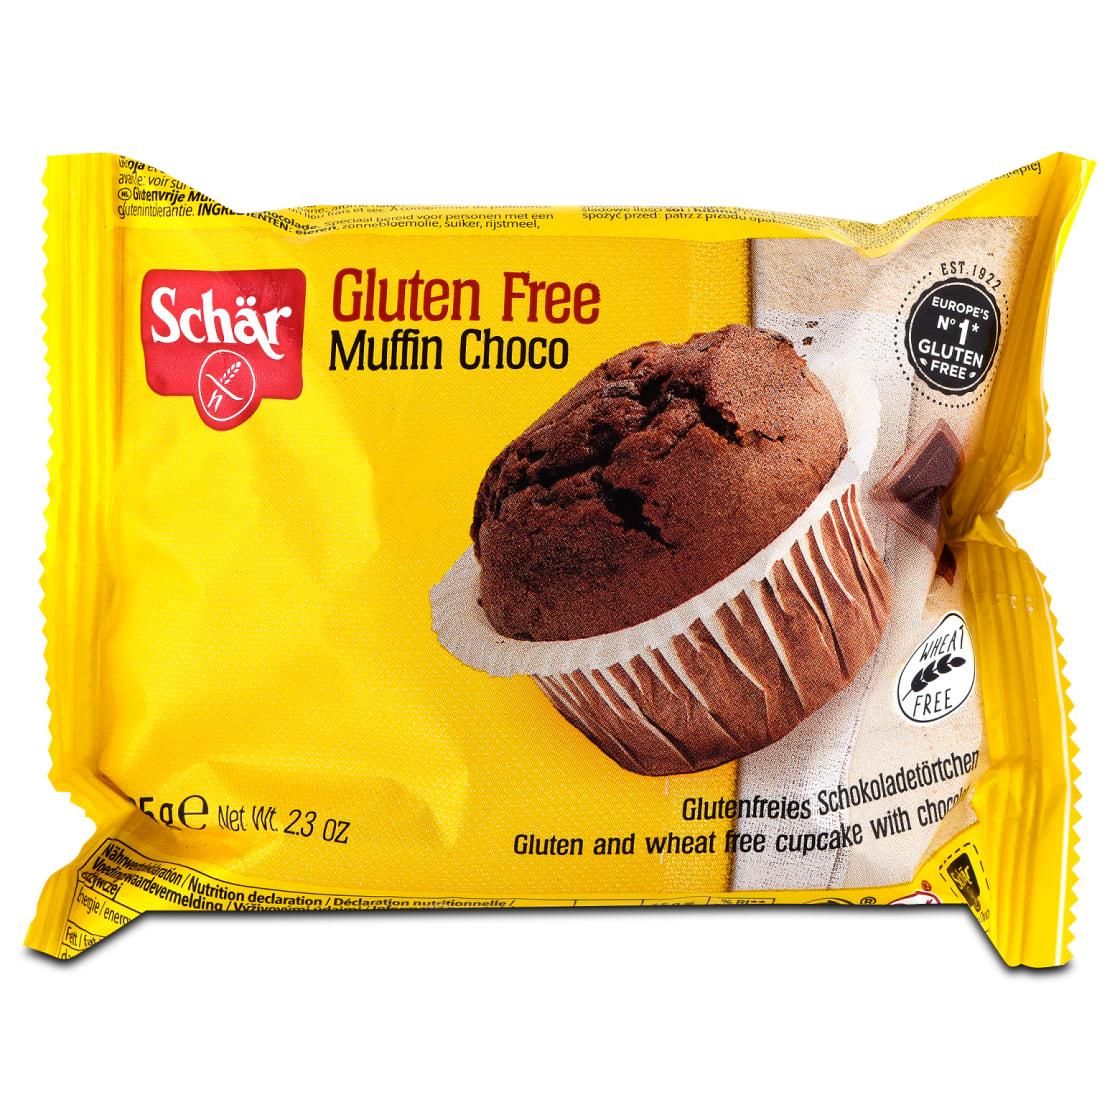 Fotografie - Schär Gluten Free Muffin Choco